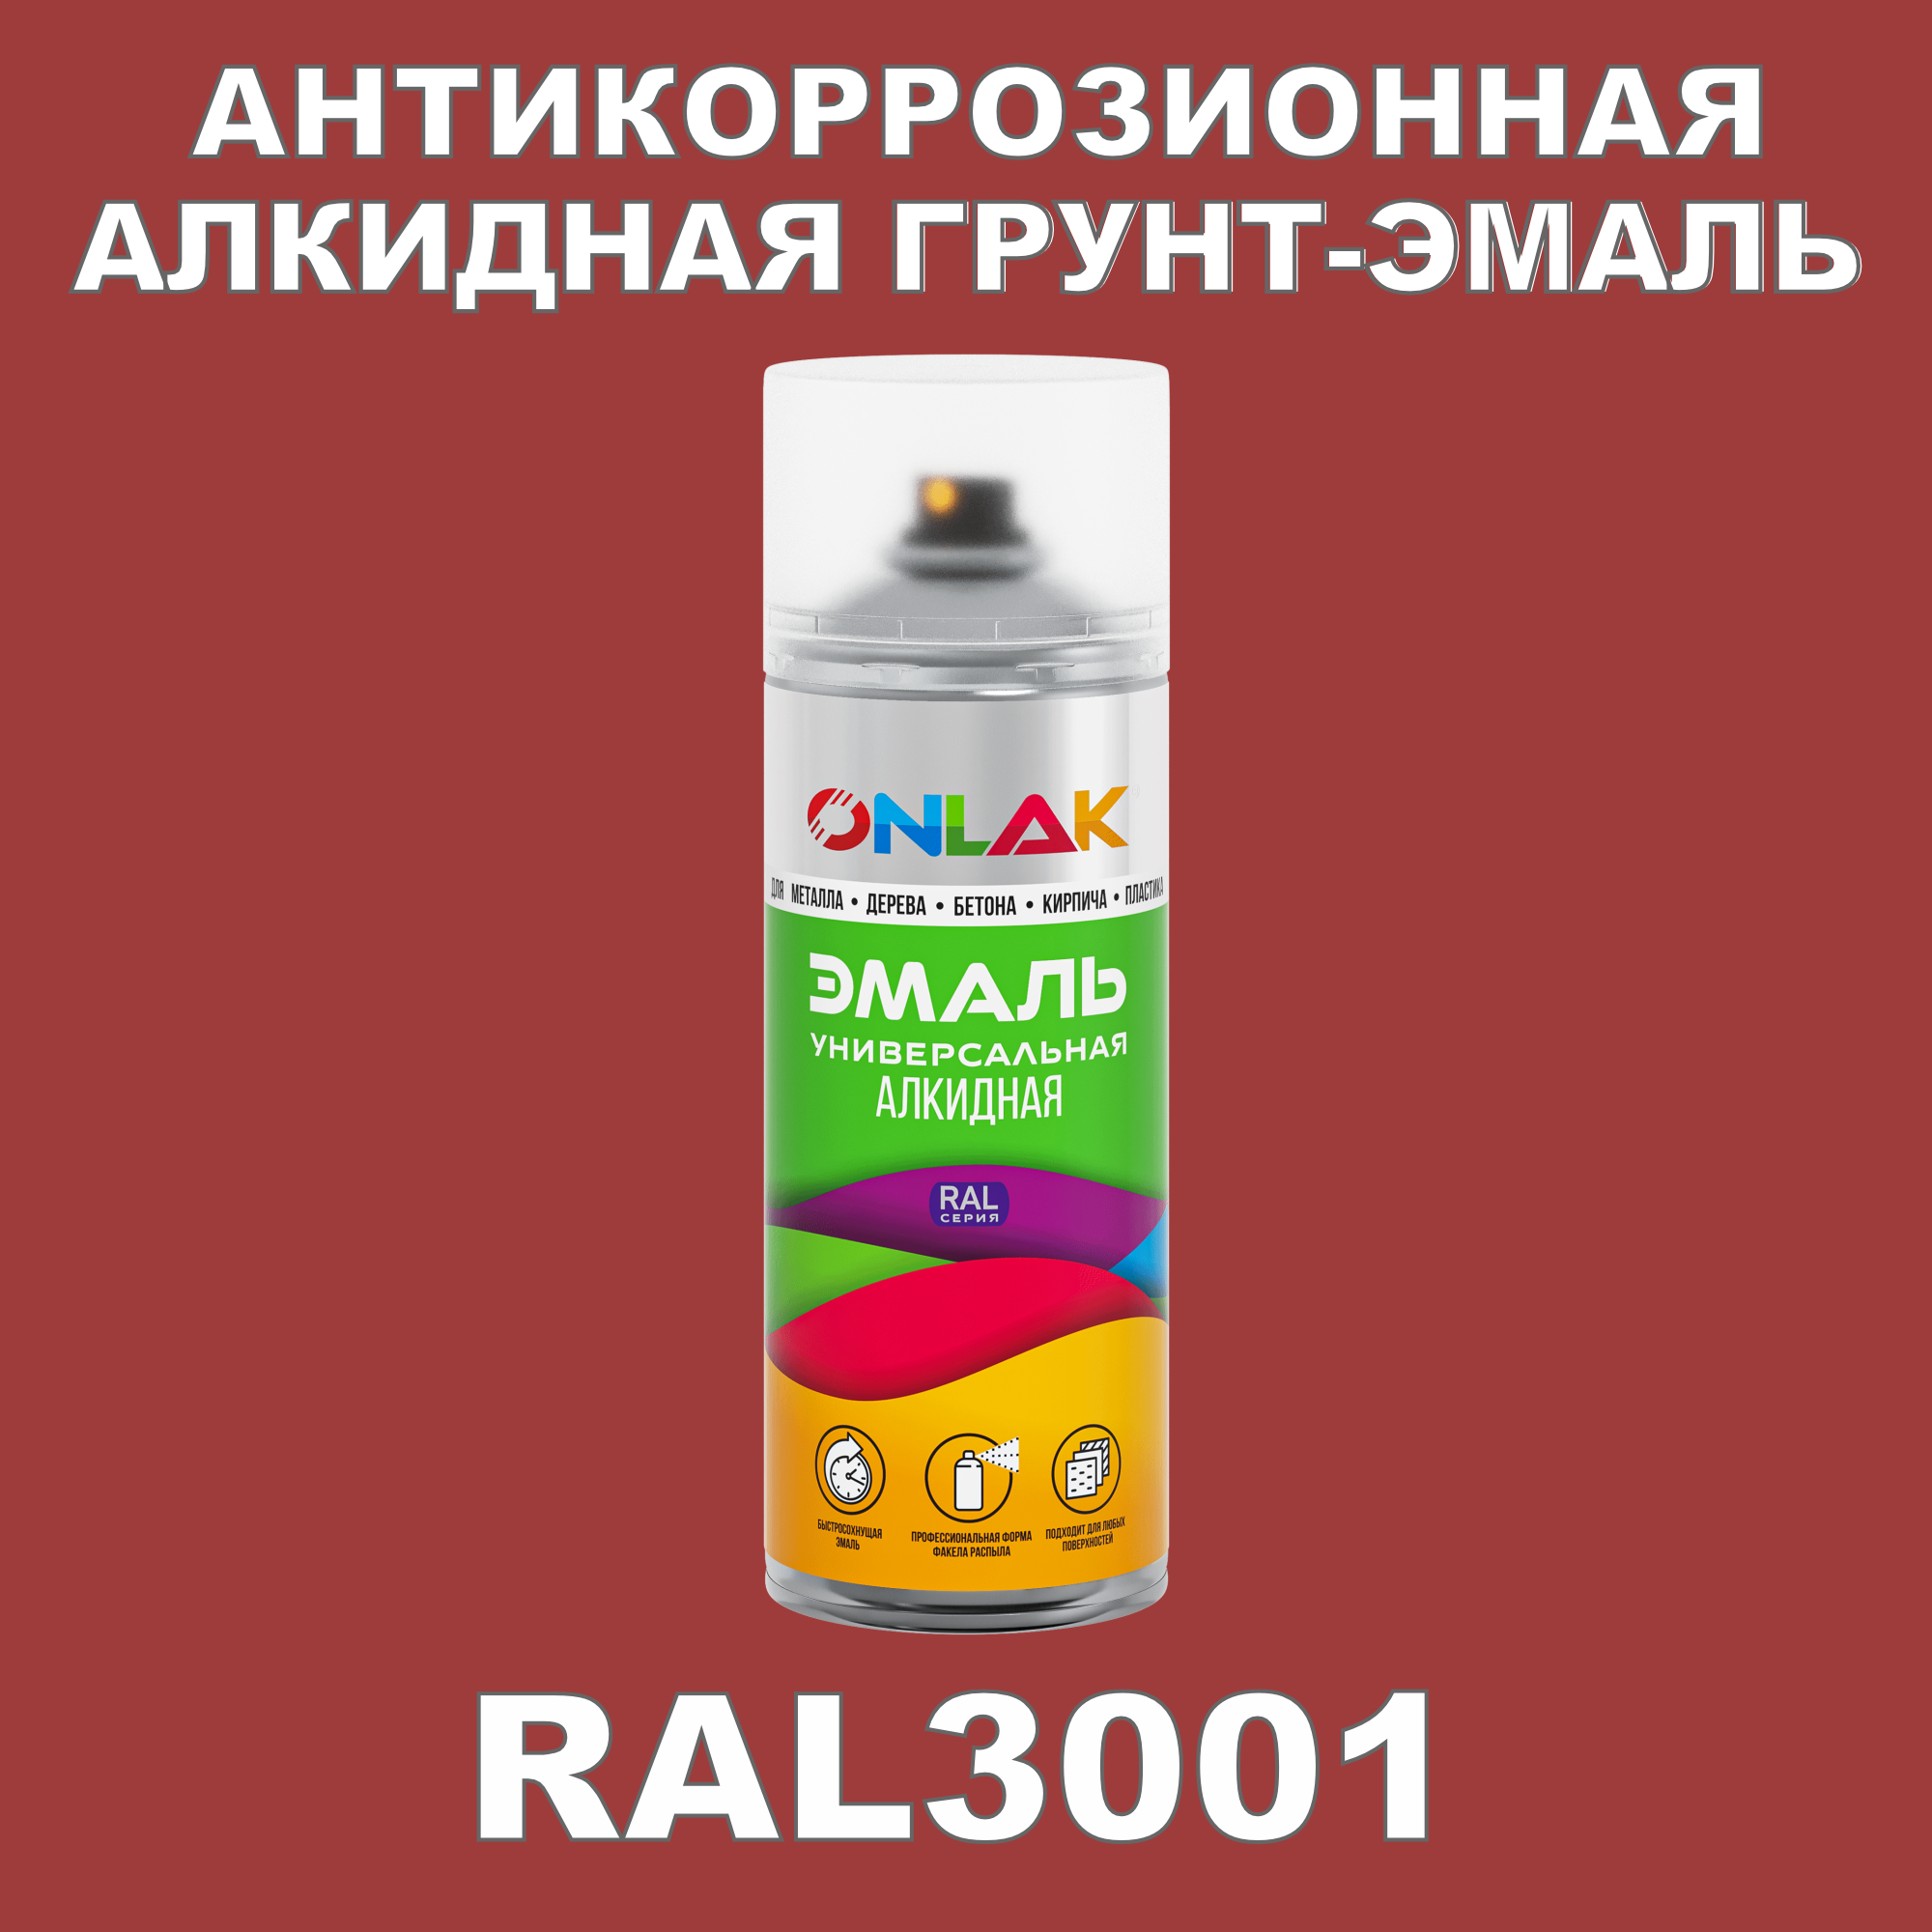 Антикоррозионная грунт-эмаль ONLAK RAL3001 полуматовая для металла и защиты от ржавчины